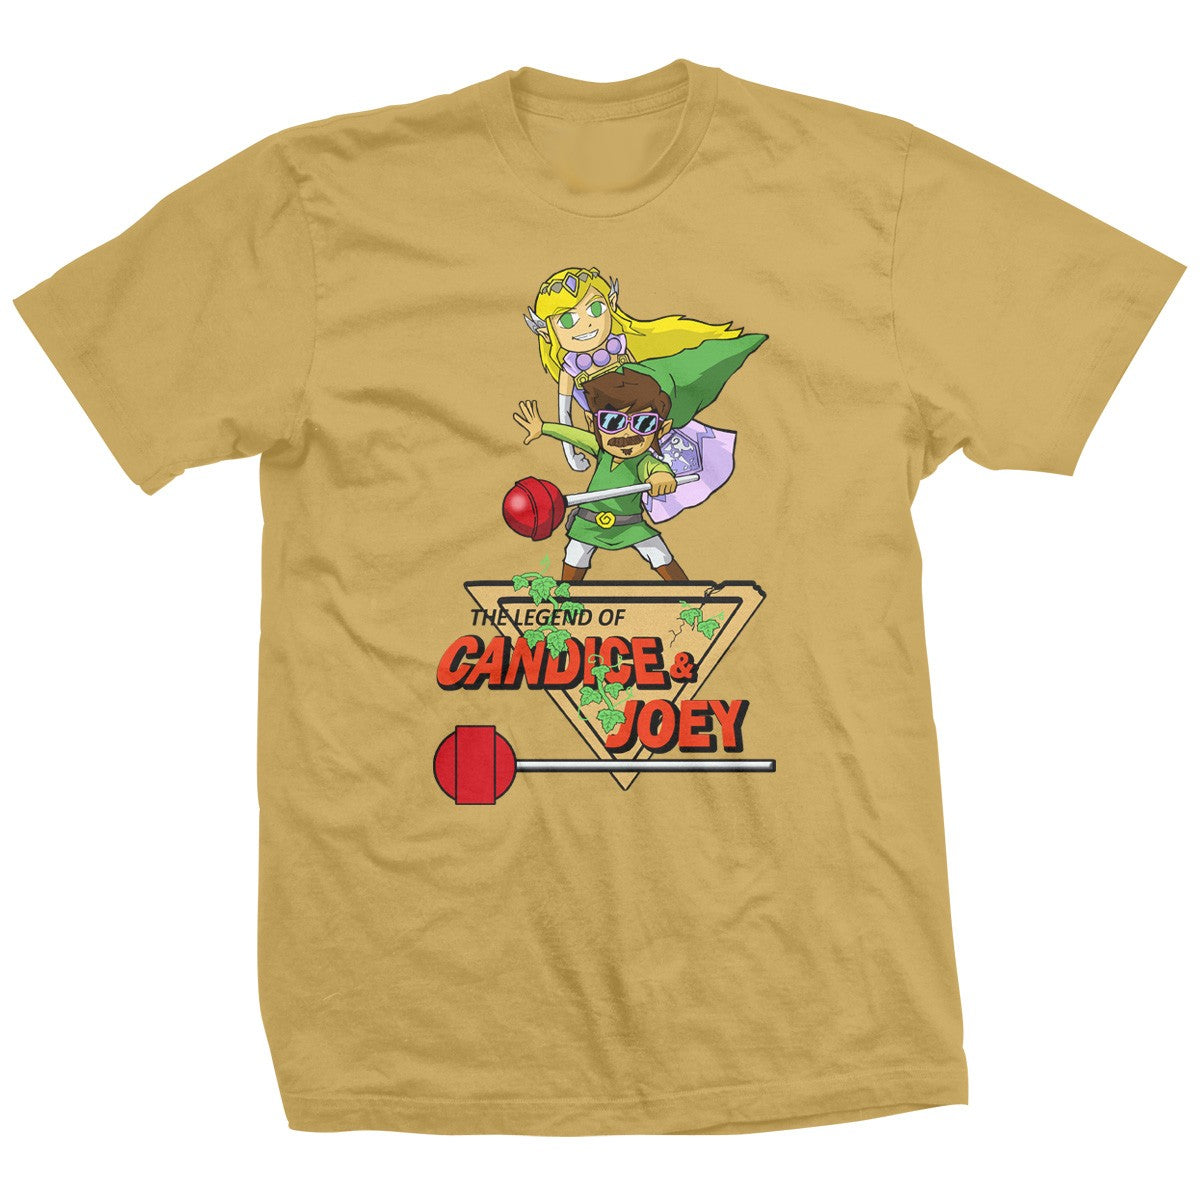 The Legend of Candice & Joey Cartoon T-Shirt